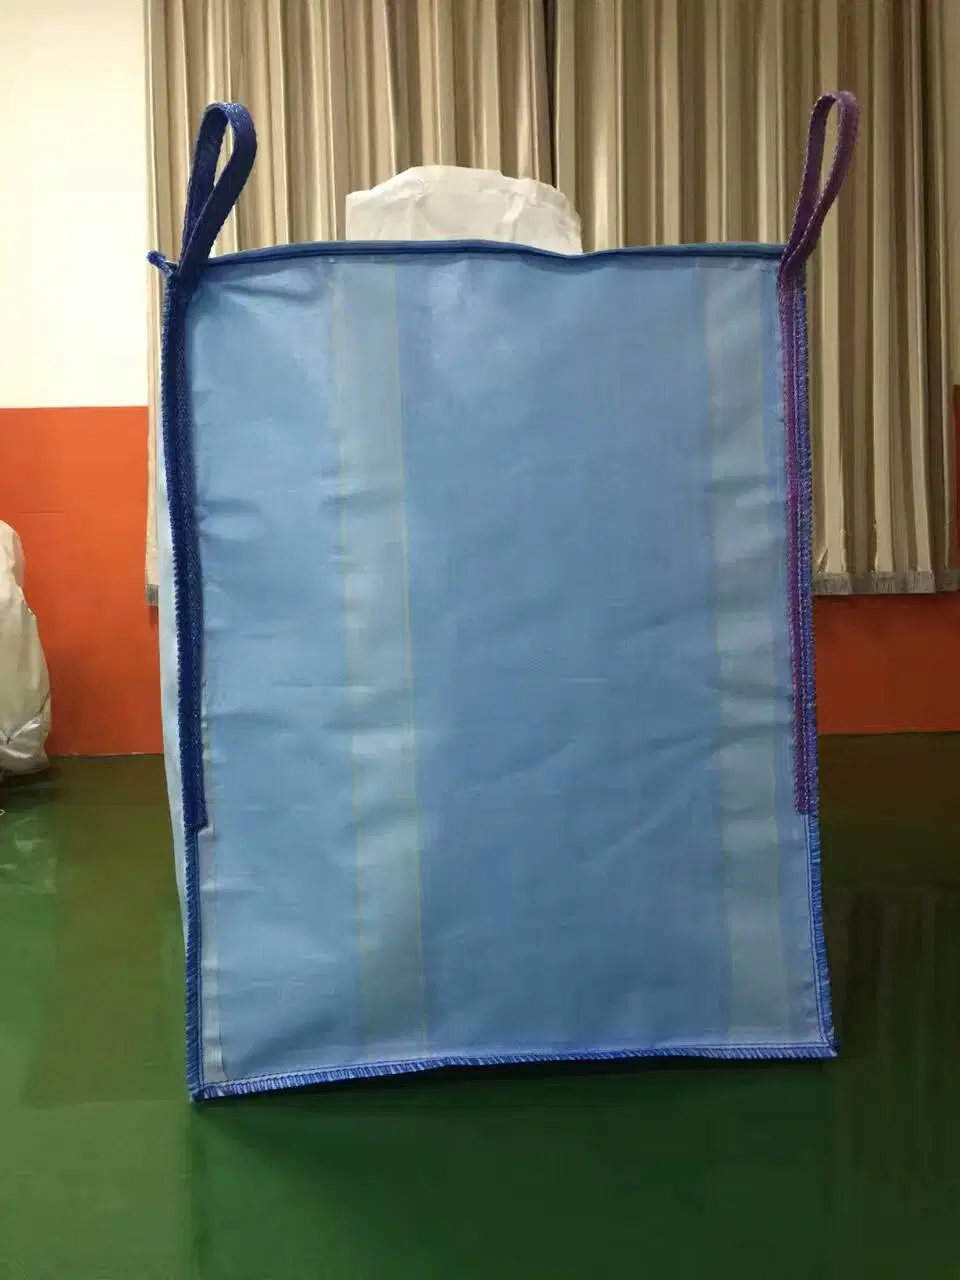 Big Bag 1000kgs FIBC Skip Bags Big Bags Jumbo Bags for Waste Collection